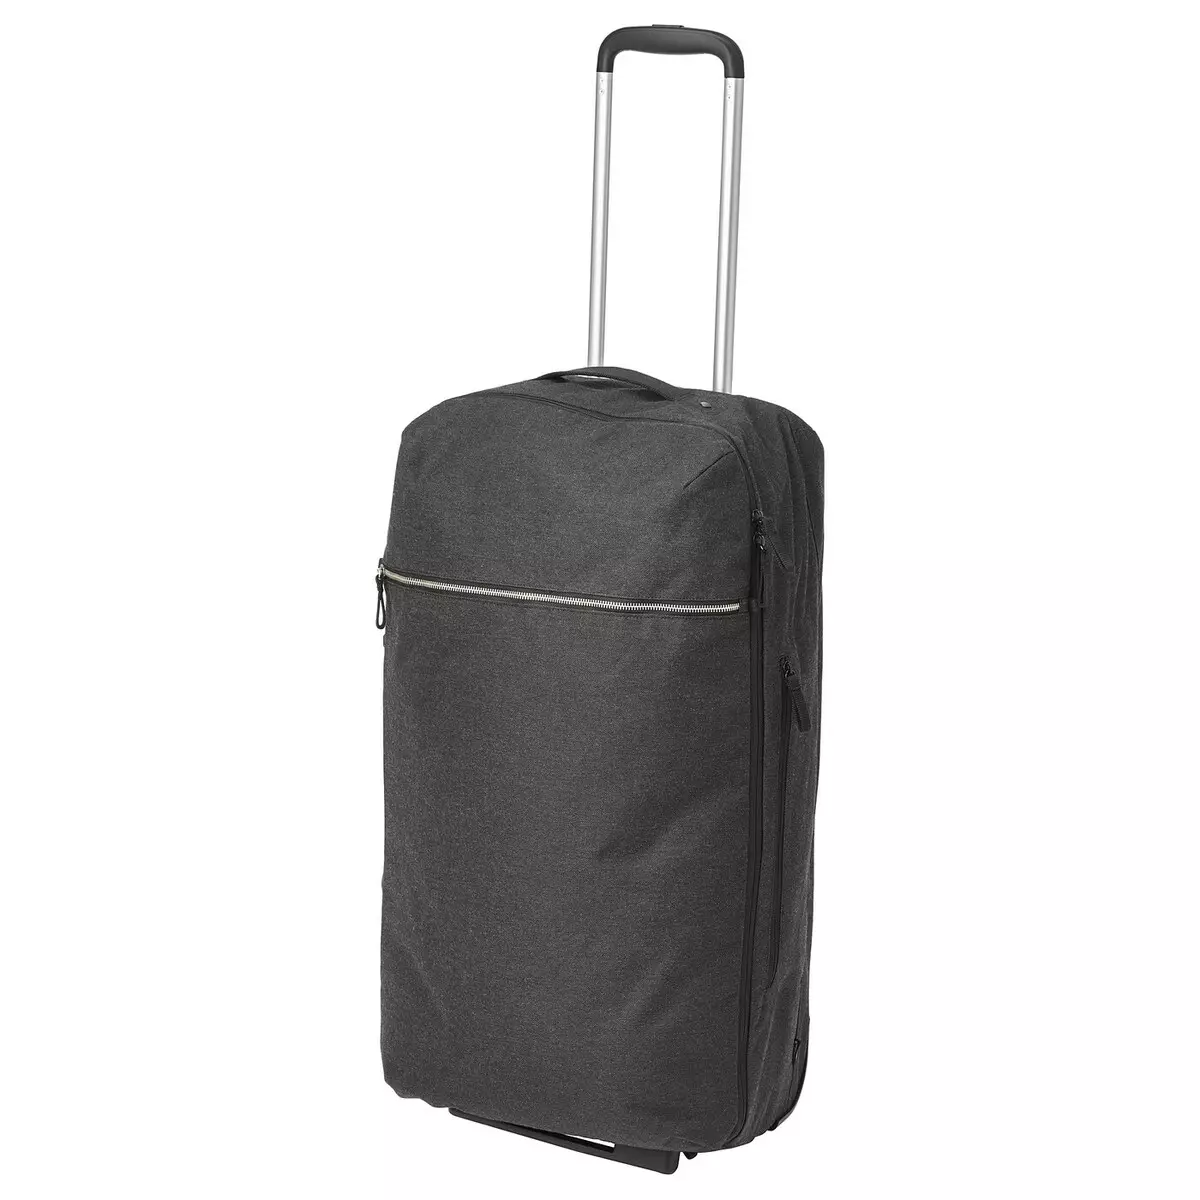 IKEA Plecaki: Przegląd czarnej walizki plecaka na kołach i innych modelach, jak to opiekować 15421_17